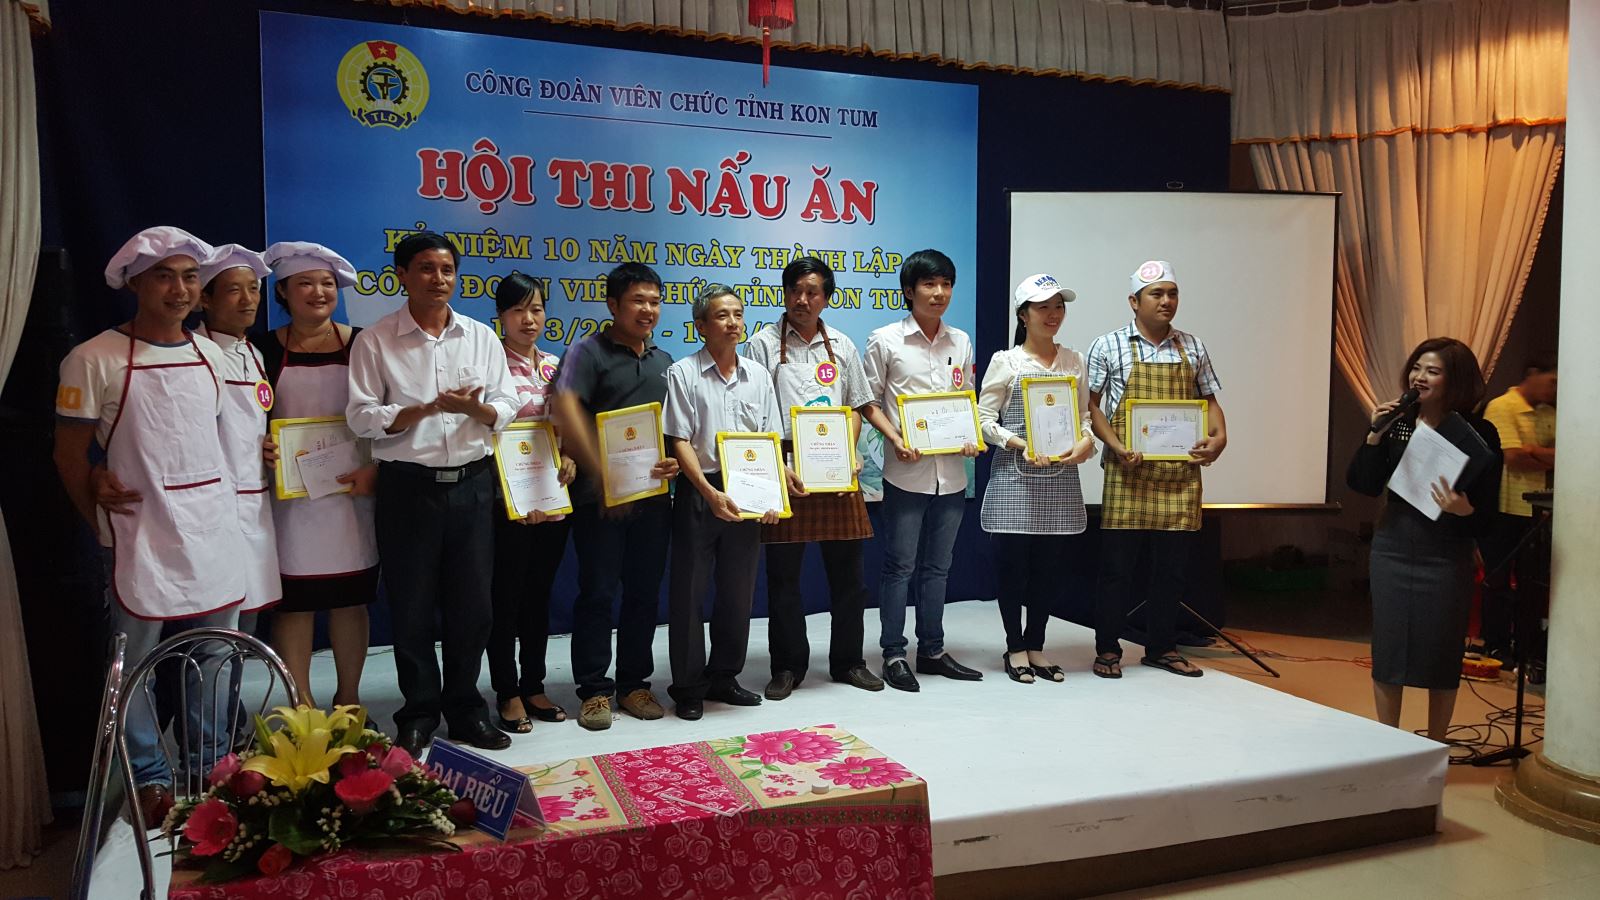 Tham gia Hội thi nấu ăn trong đoàn viên, CBCCVC, NLĐ khối CĐVC tỉnh Kon Tum lần thứ nhất năm 2016